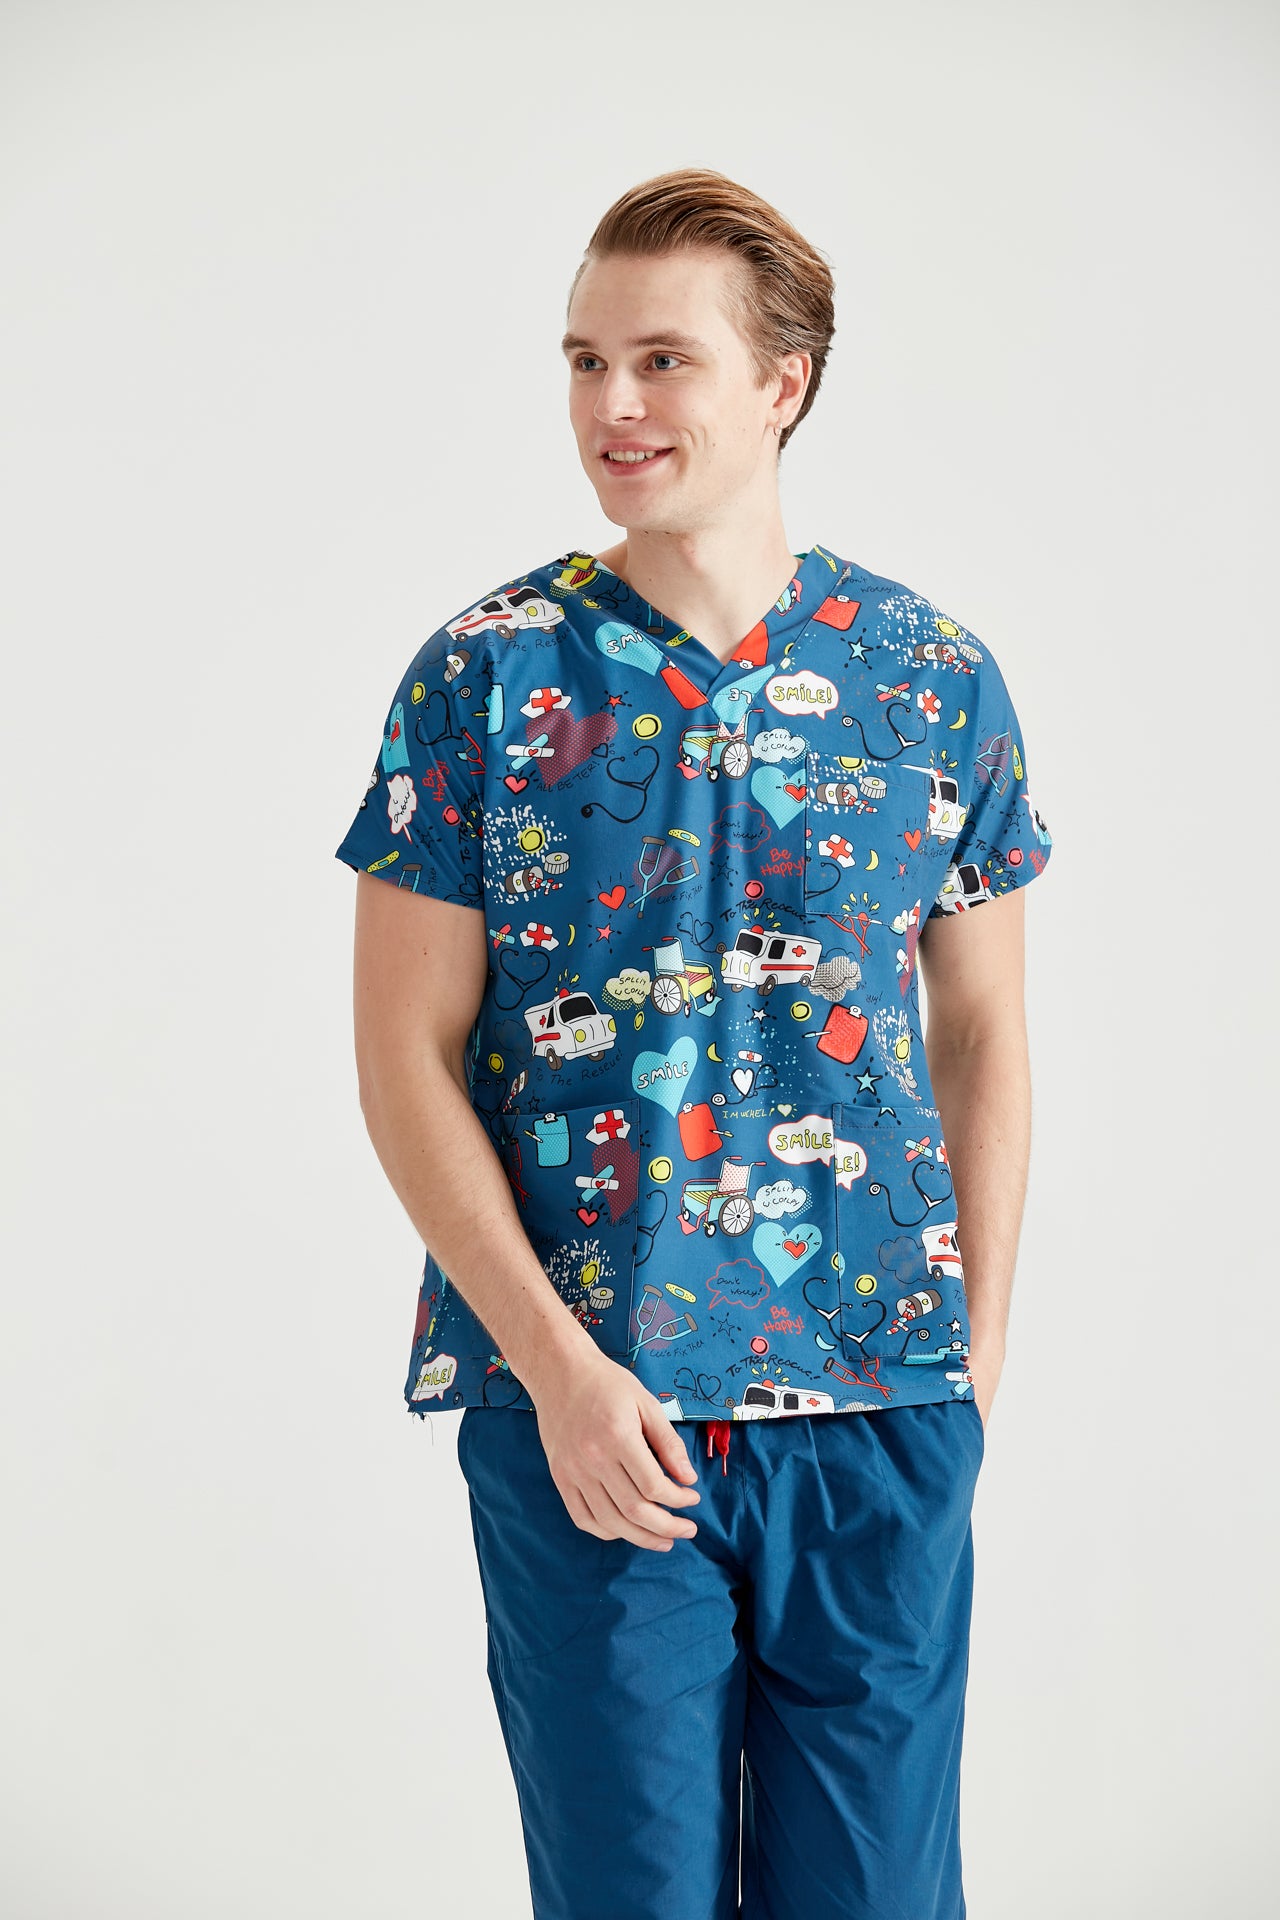 Asistent imbracat in bluza medicala pentru barbati, cu elastan, Ambulance Blue, vedere din fata